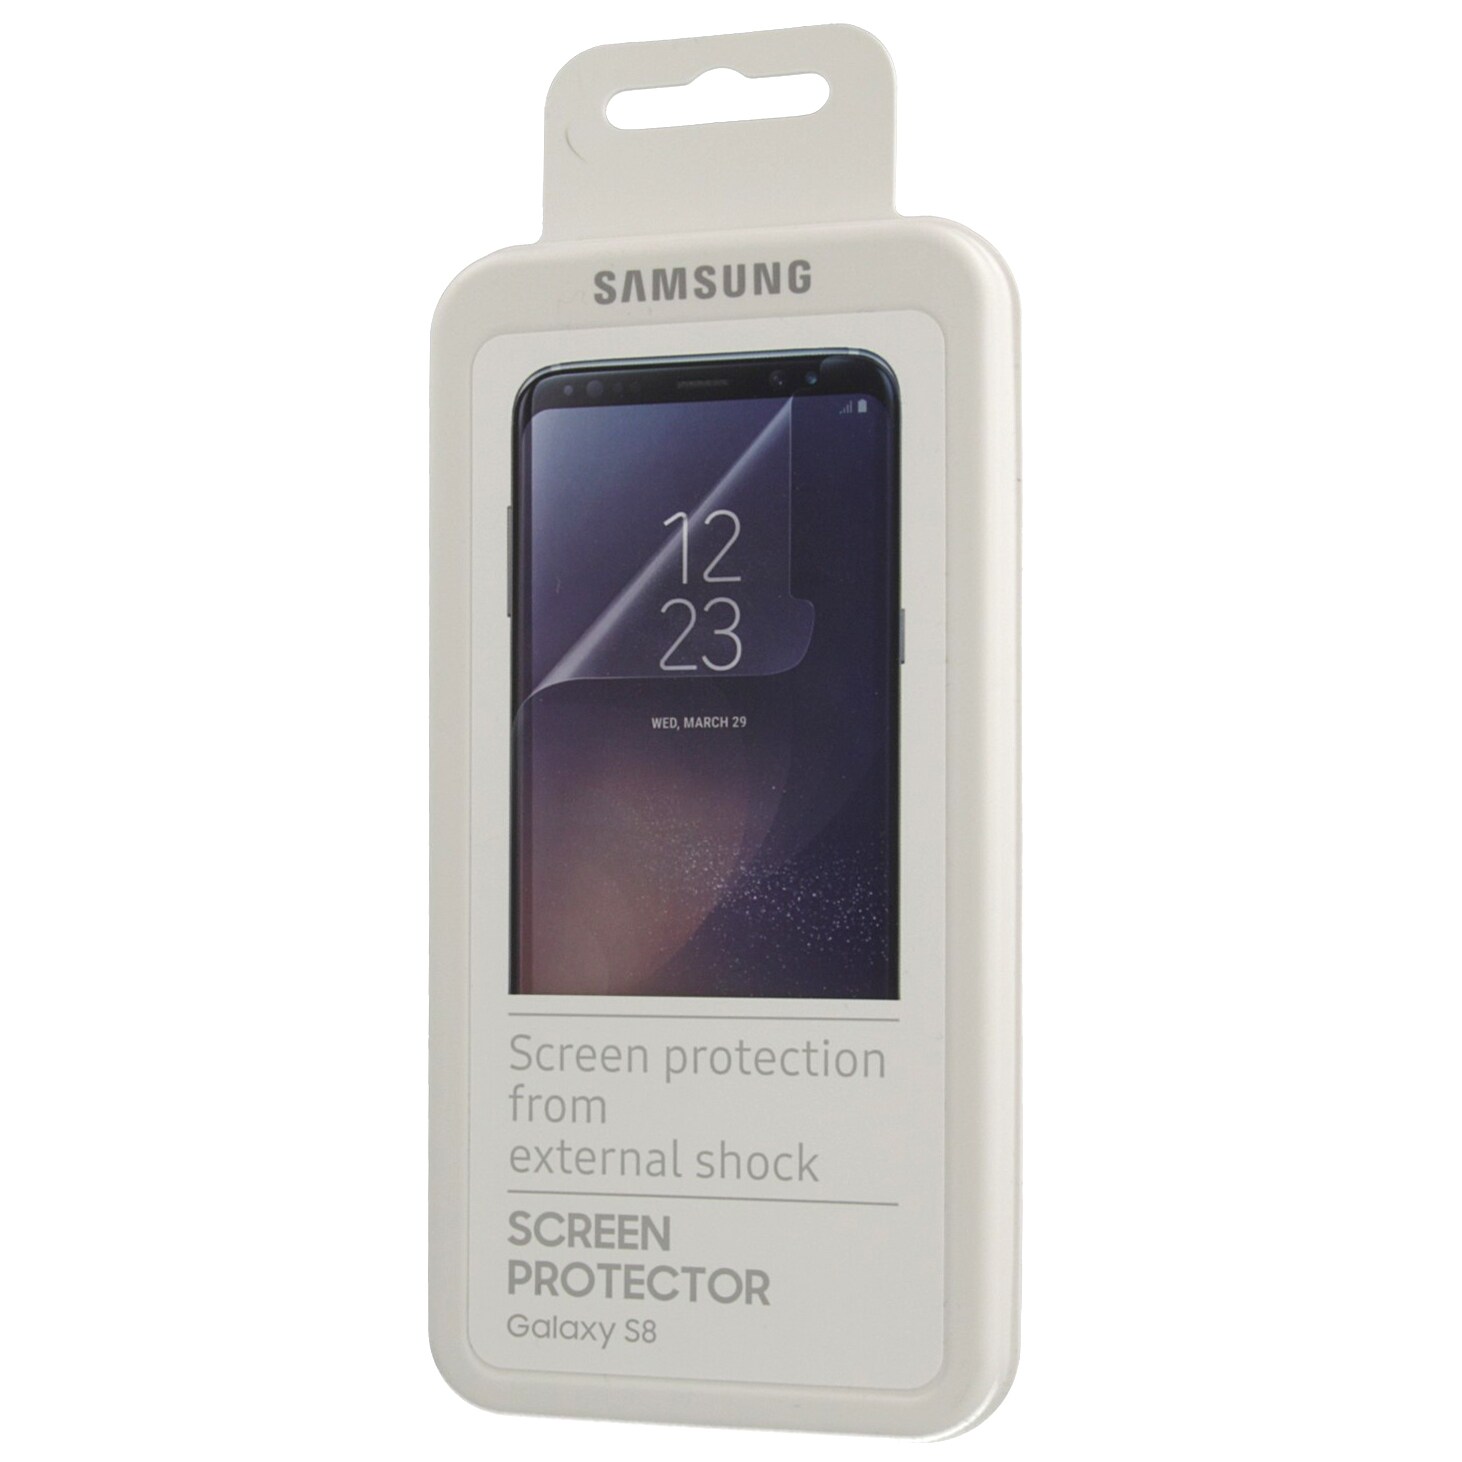 Samsung skjermbeskyttelse FG950 til Galaxy S8